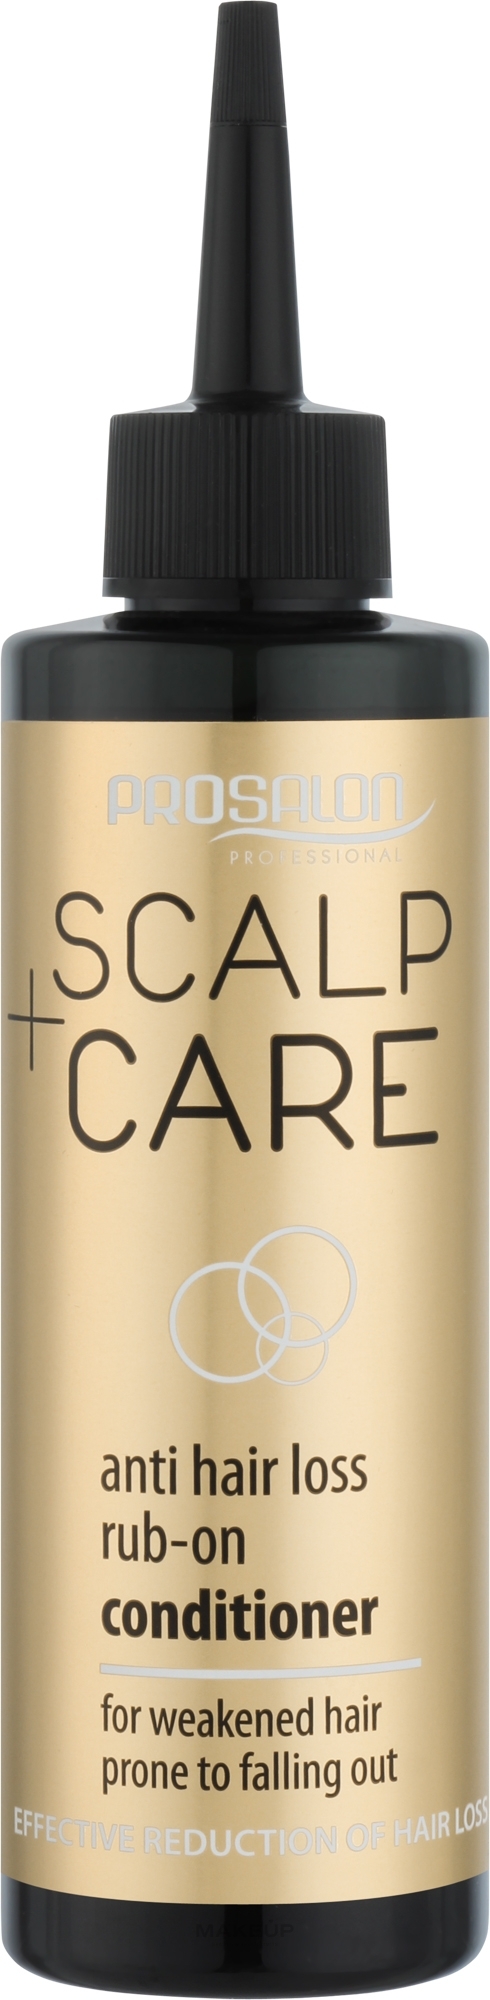 Лосьон против выпадения волос - Prosalon Scalp Care — фото 200ml